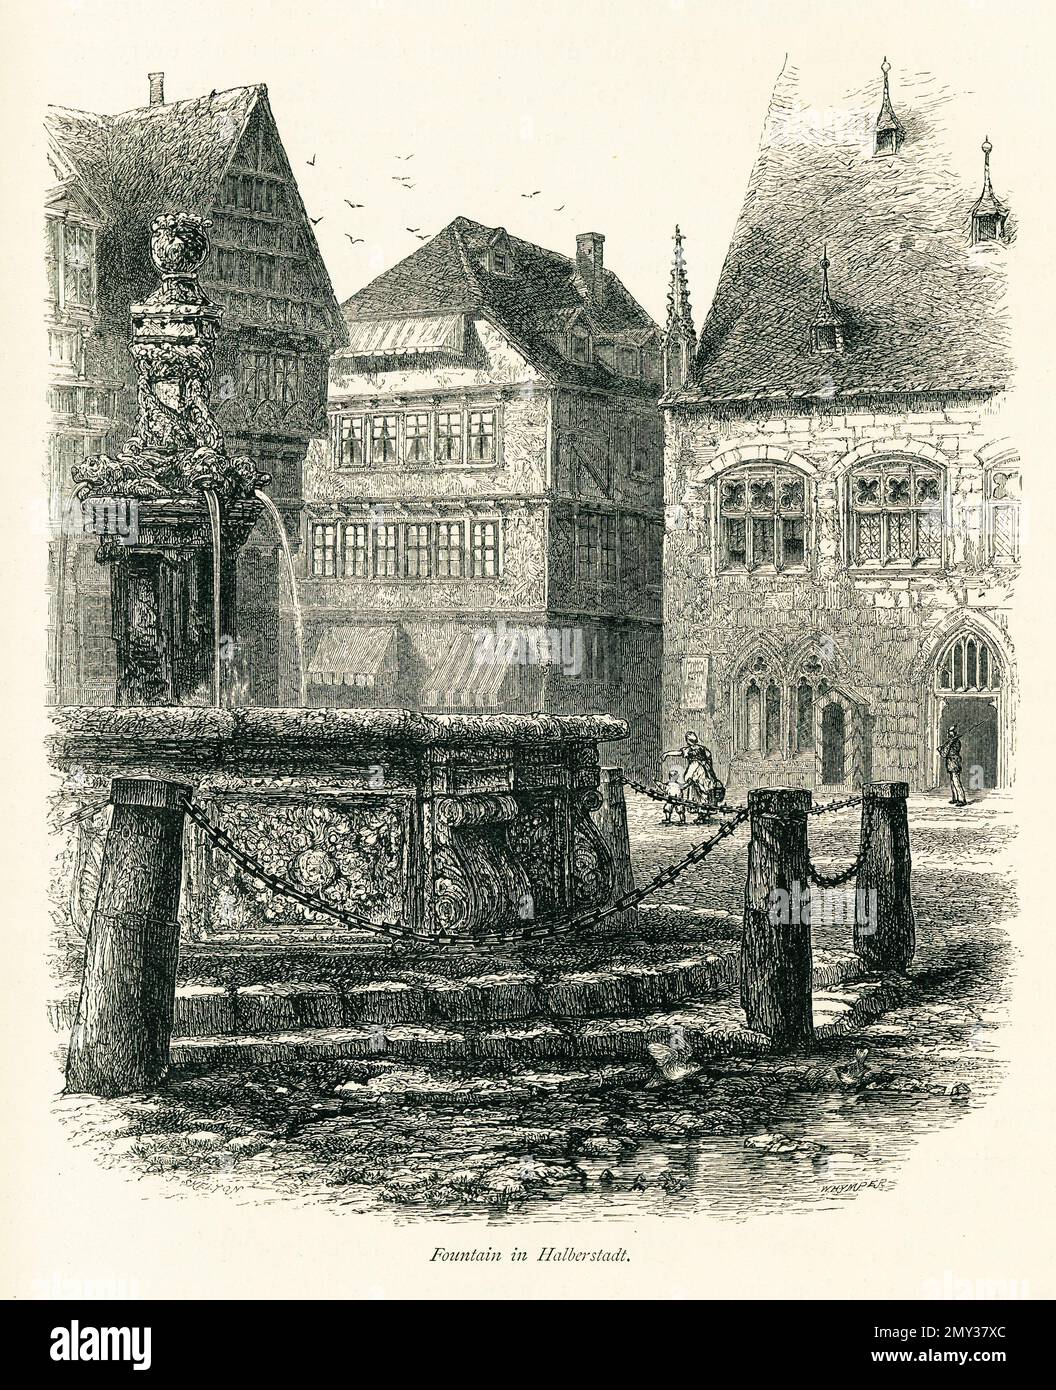 Antica illustrazione di una fontana a Halberstadt, Germania. Incisione pubblicata in picturesque Europe, Vol. V (Cassell & Company, Limited: London, par Foto Stock